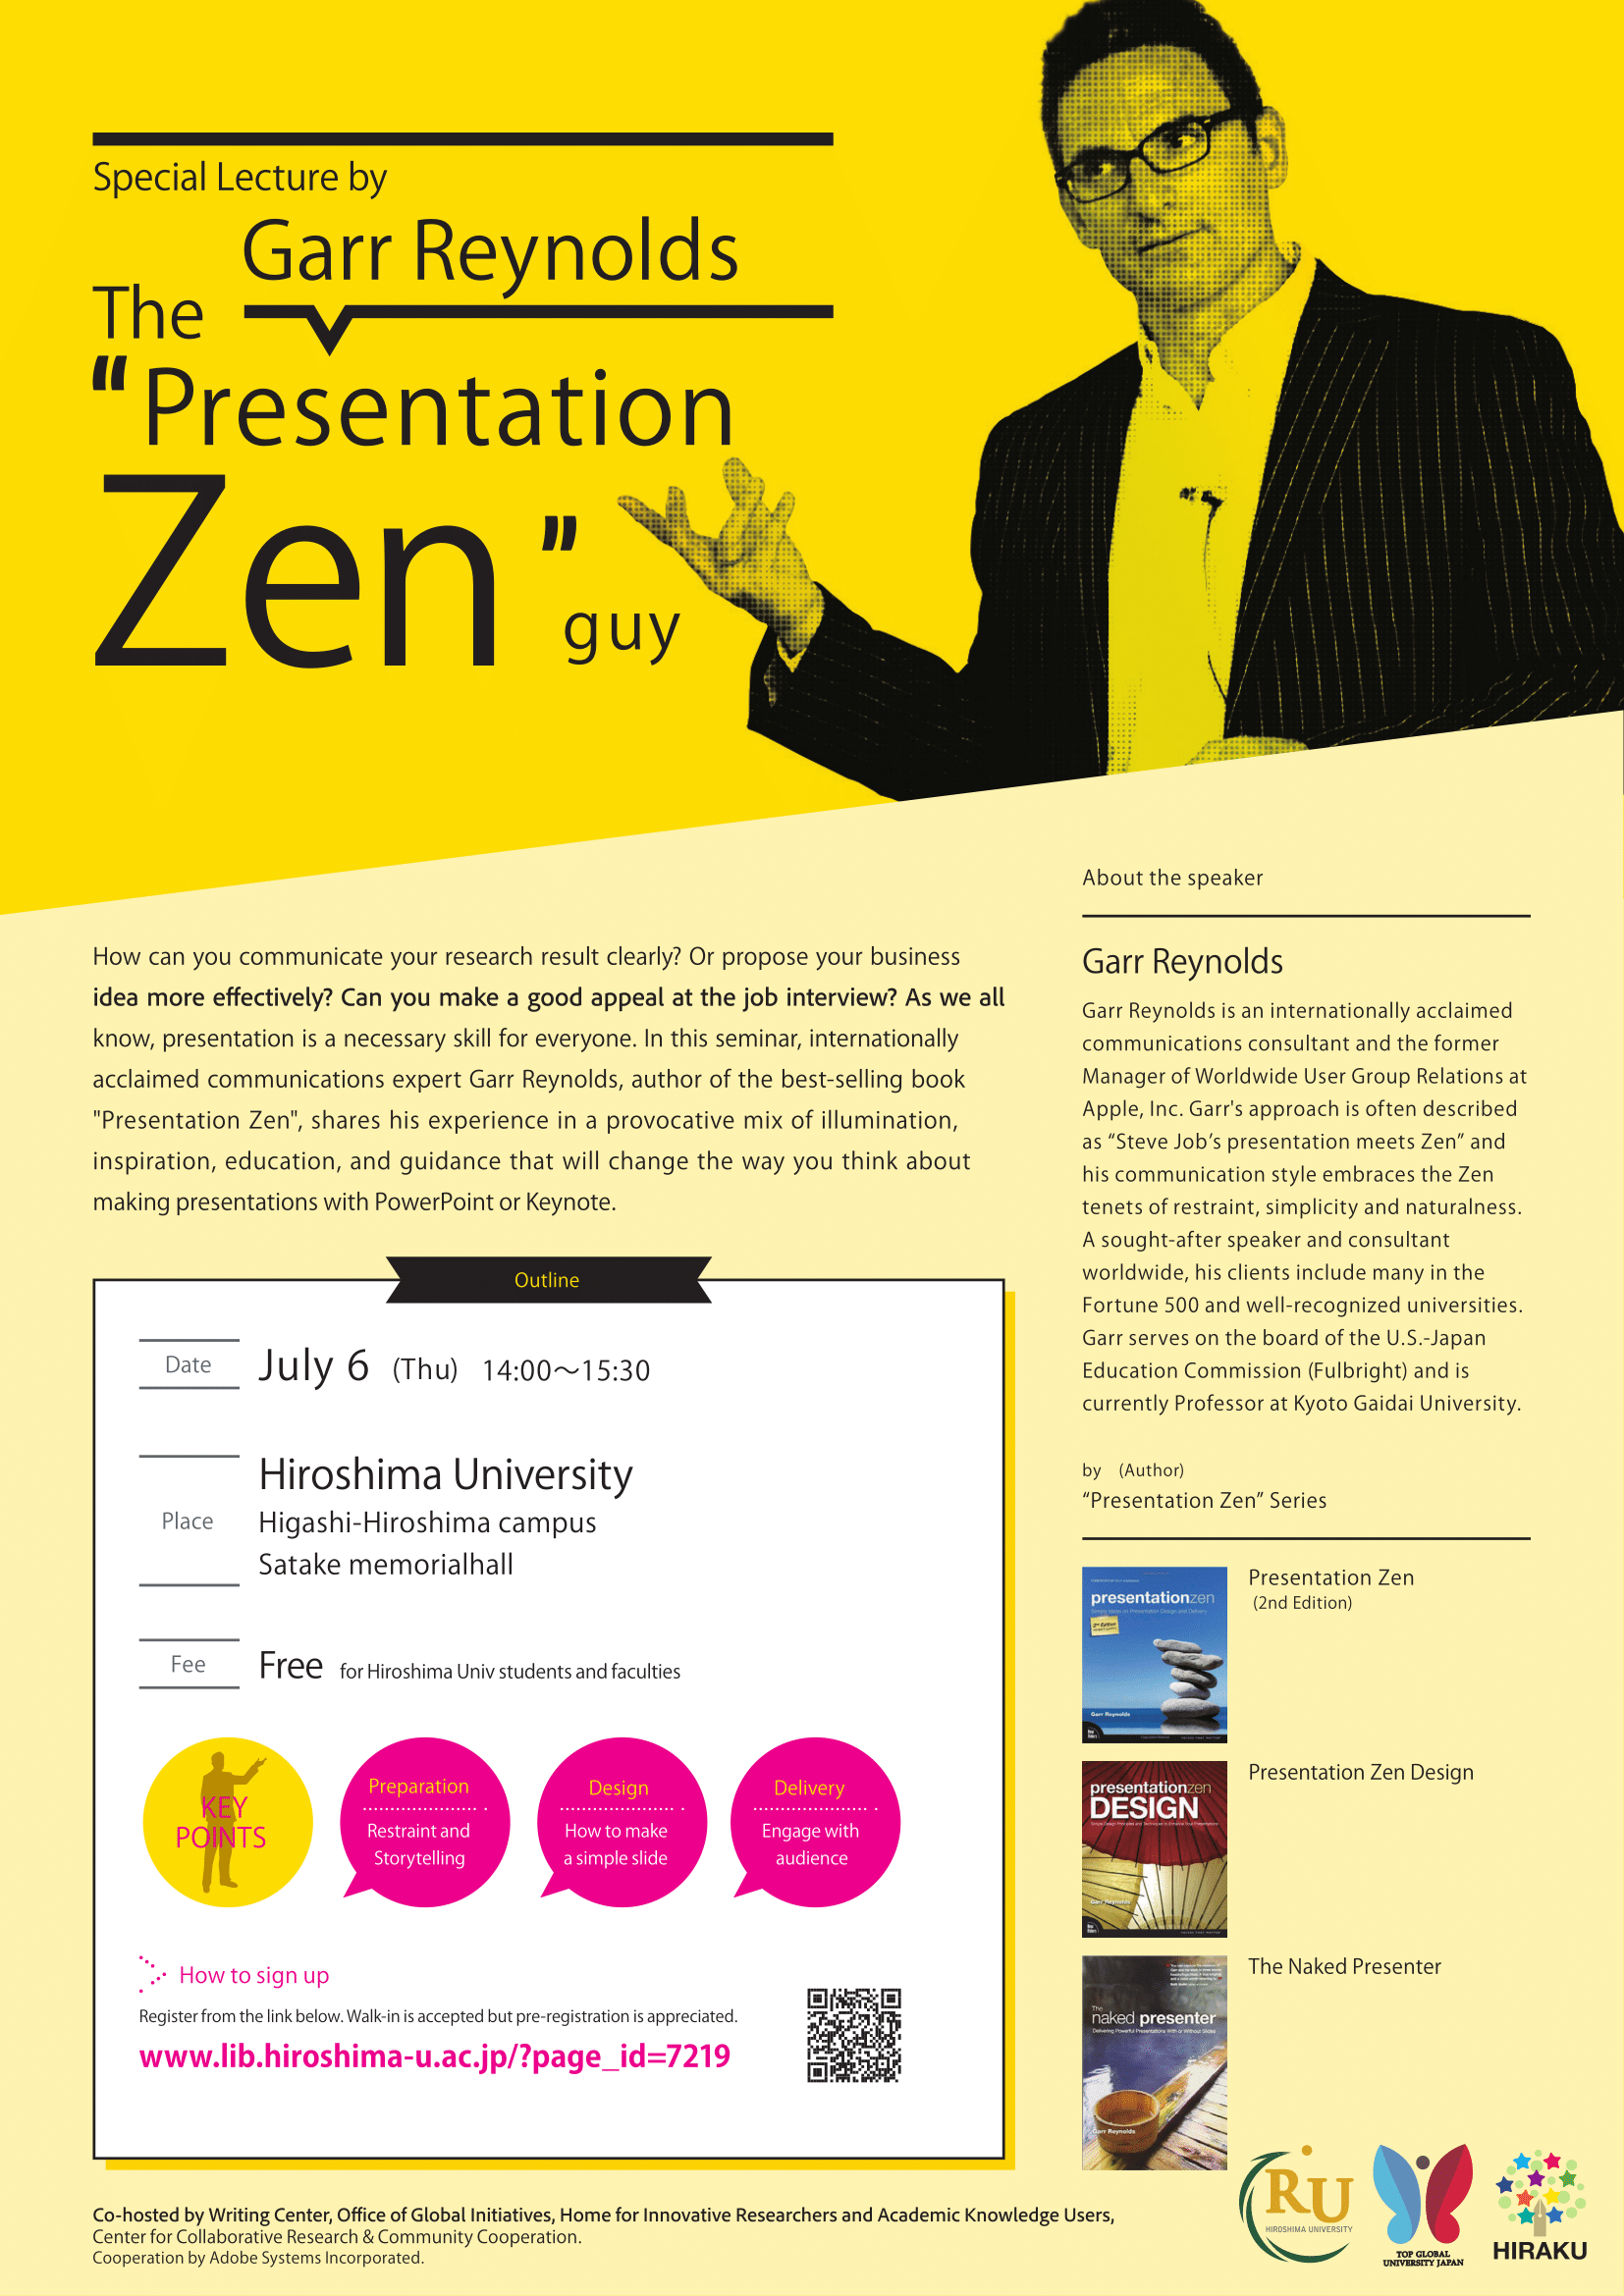 presentation zen design garr reynolds